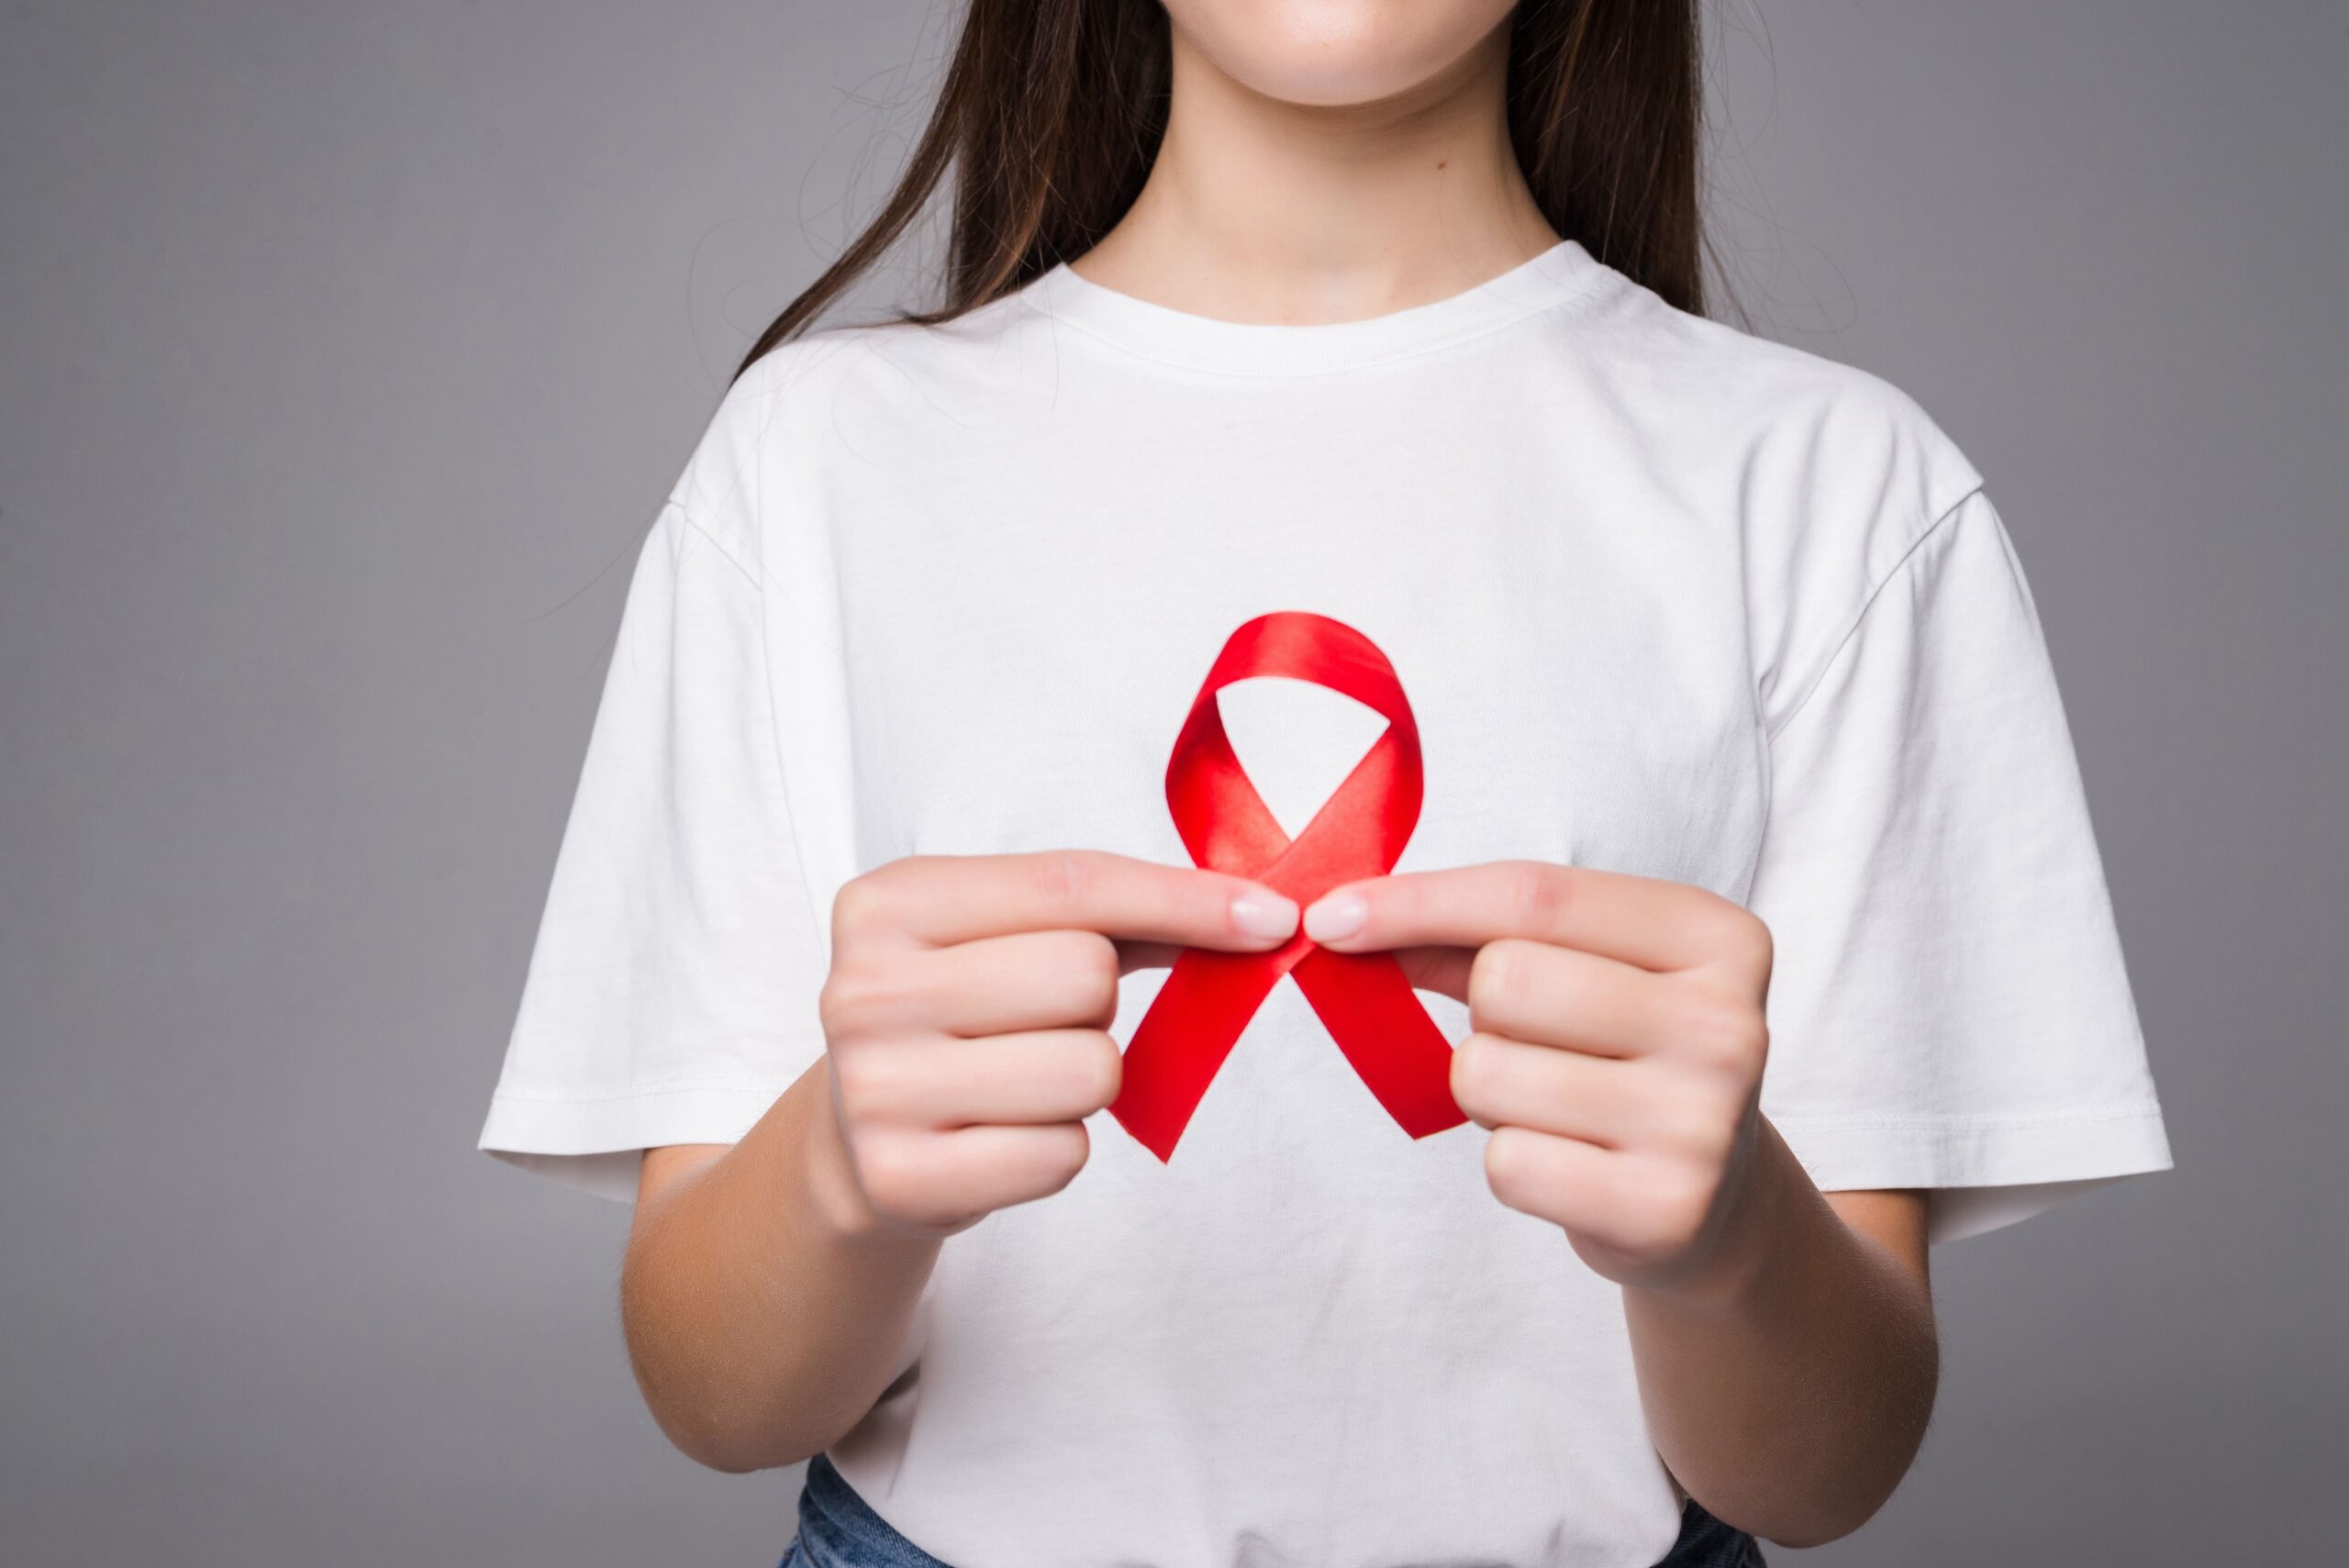 El 38% de los diagnósticos de VIH en los jóvenes entre 15 a 29 años son realizados en etapas tardías de la infección